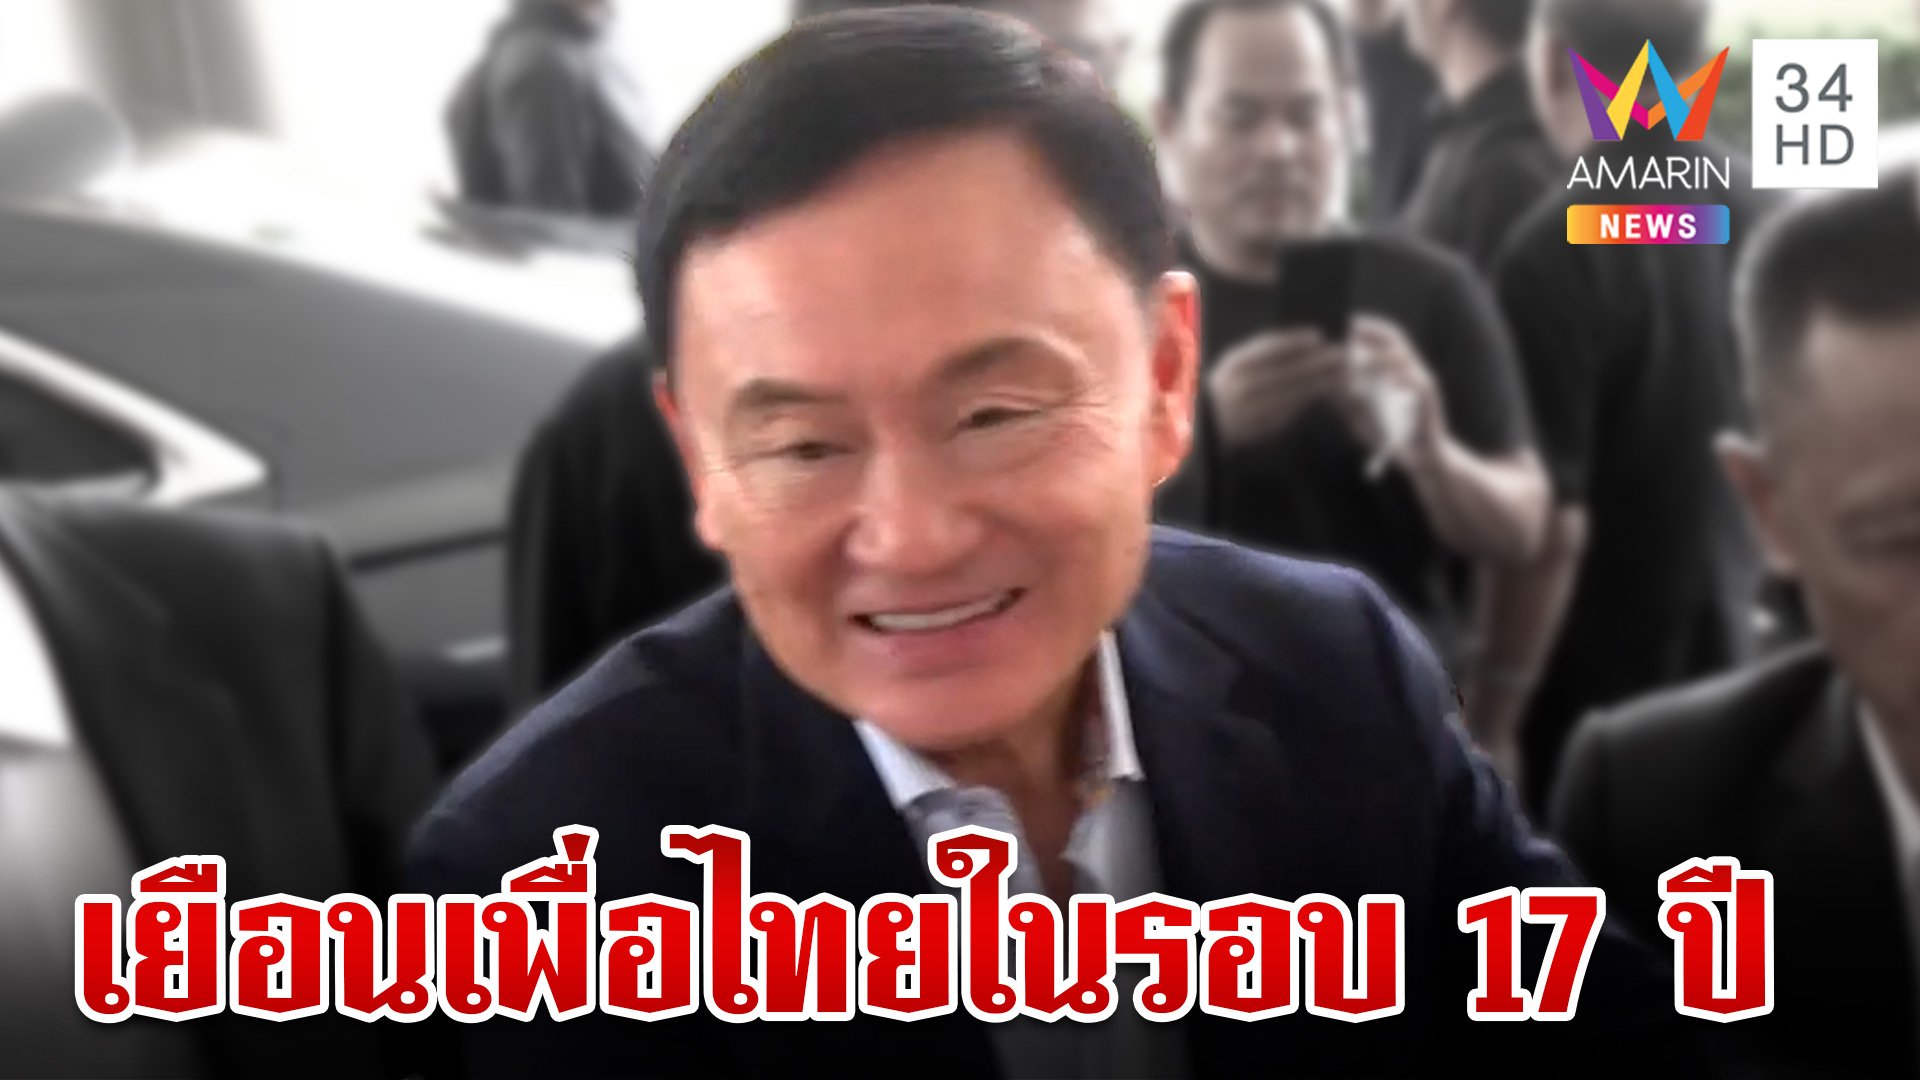 "ทักษิณ" คืนถิ่น เยือนเพื่อไทยในรอบ 17 ปี ด้อมแดงรอรับคับคั่ง "อิ๊ง" โต้ครอบงำพรรค | ทุบโต๊ะข่าว | 26 มี.ค. 67 | AMARIN TVHD34